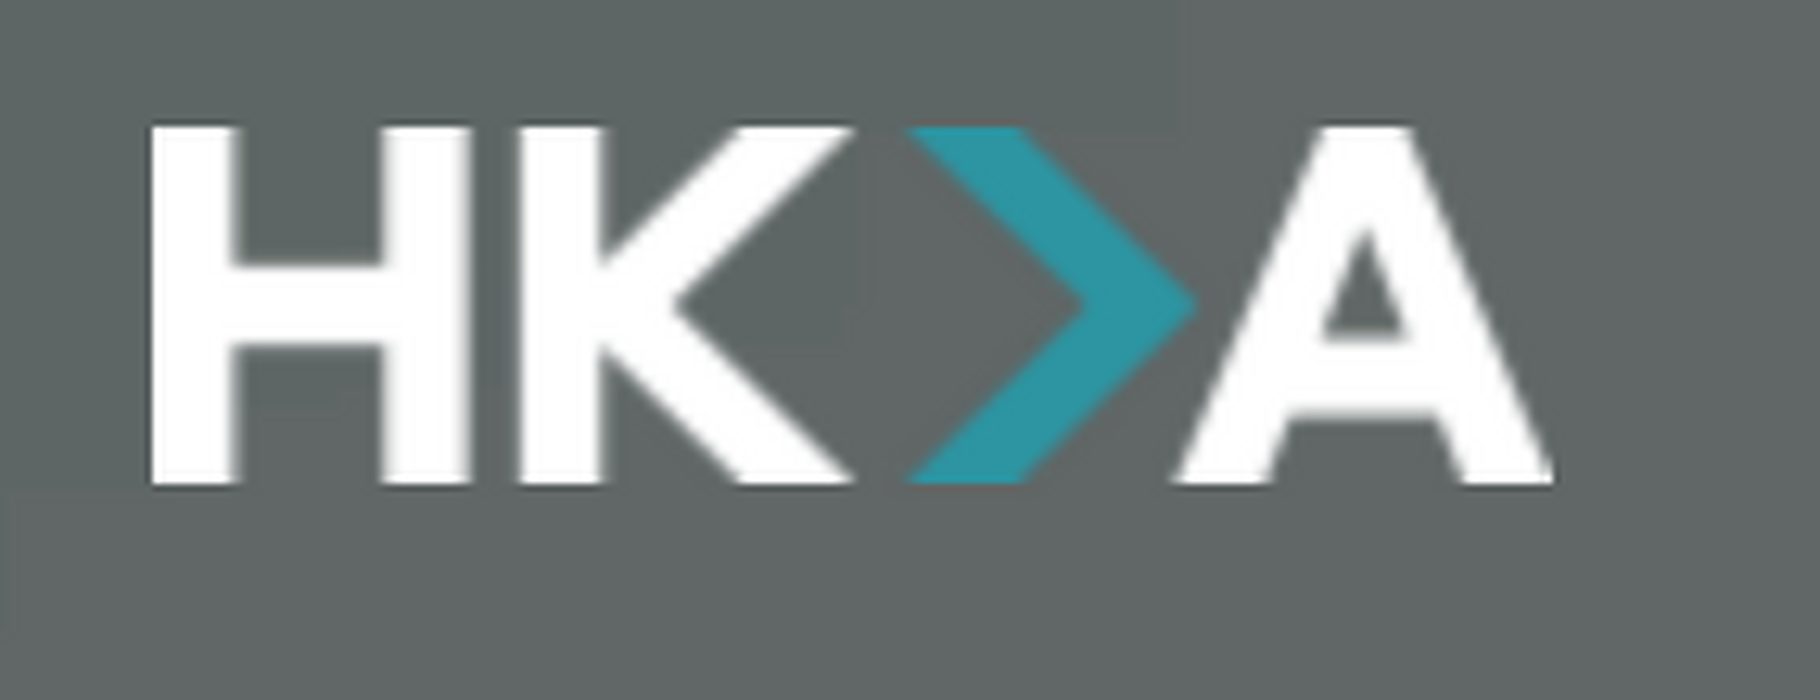 hk-a-logo